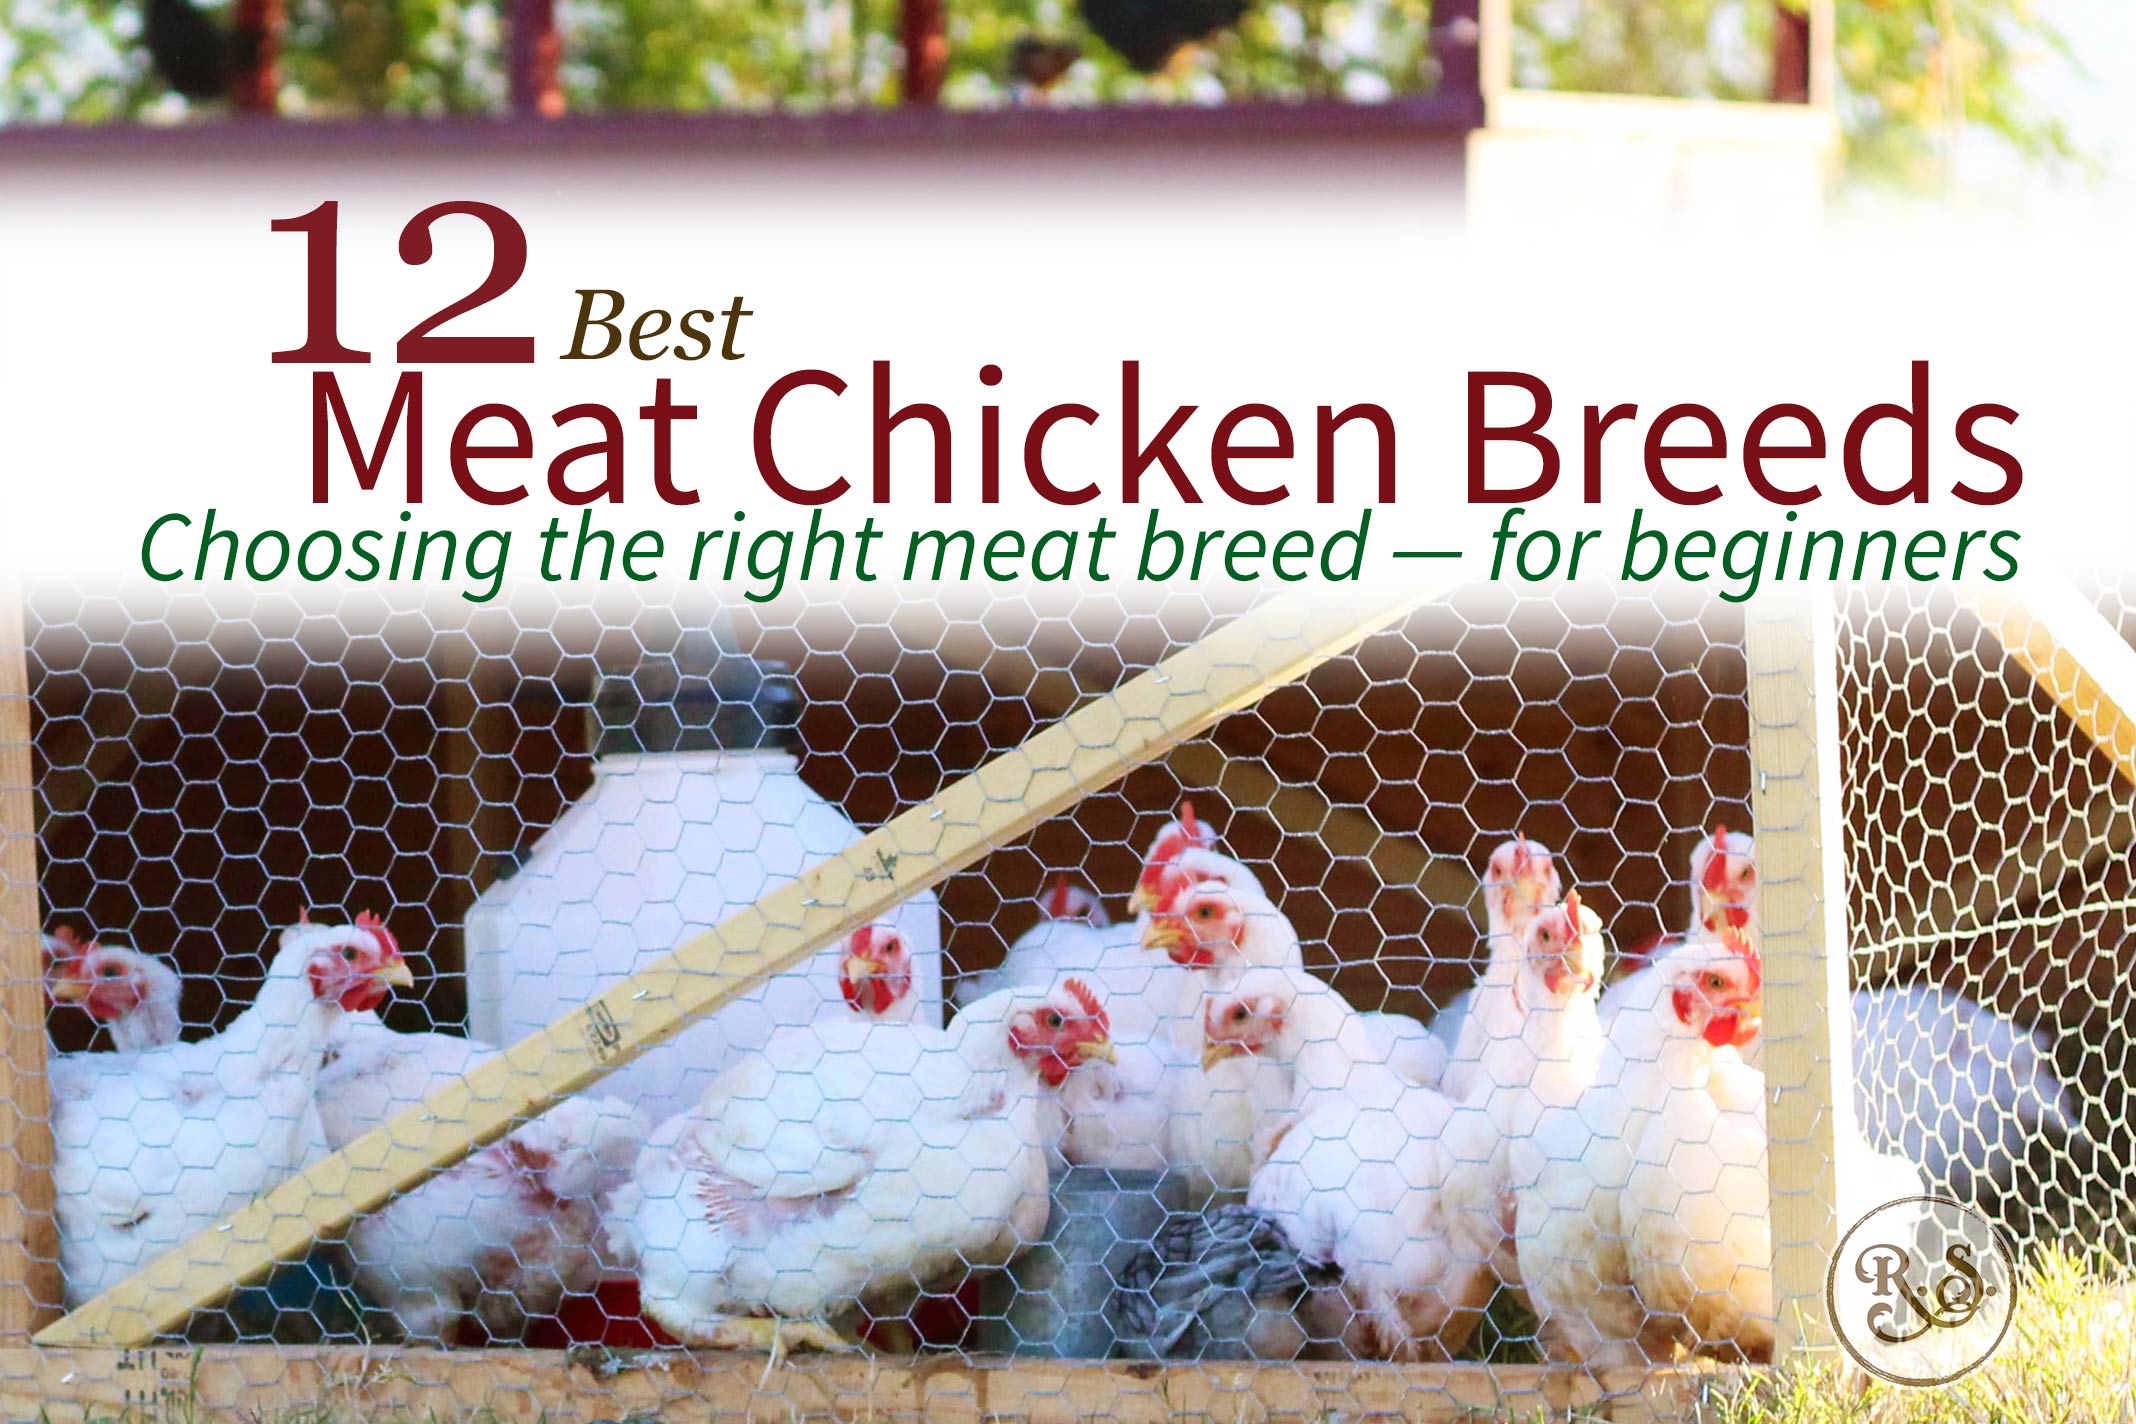 Meat Chicken Breeds: 12 - Best